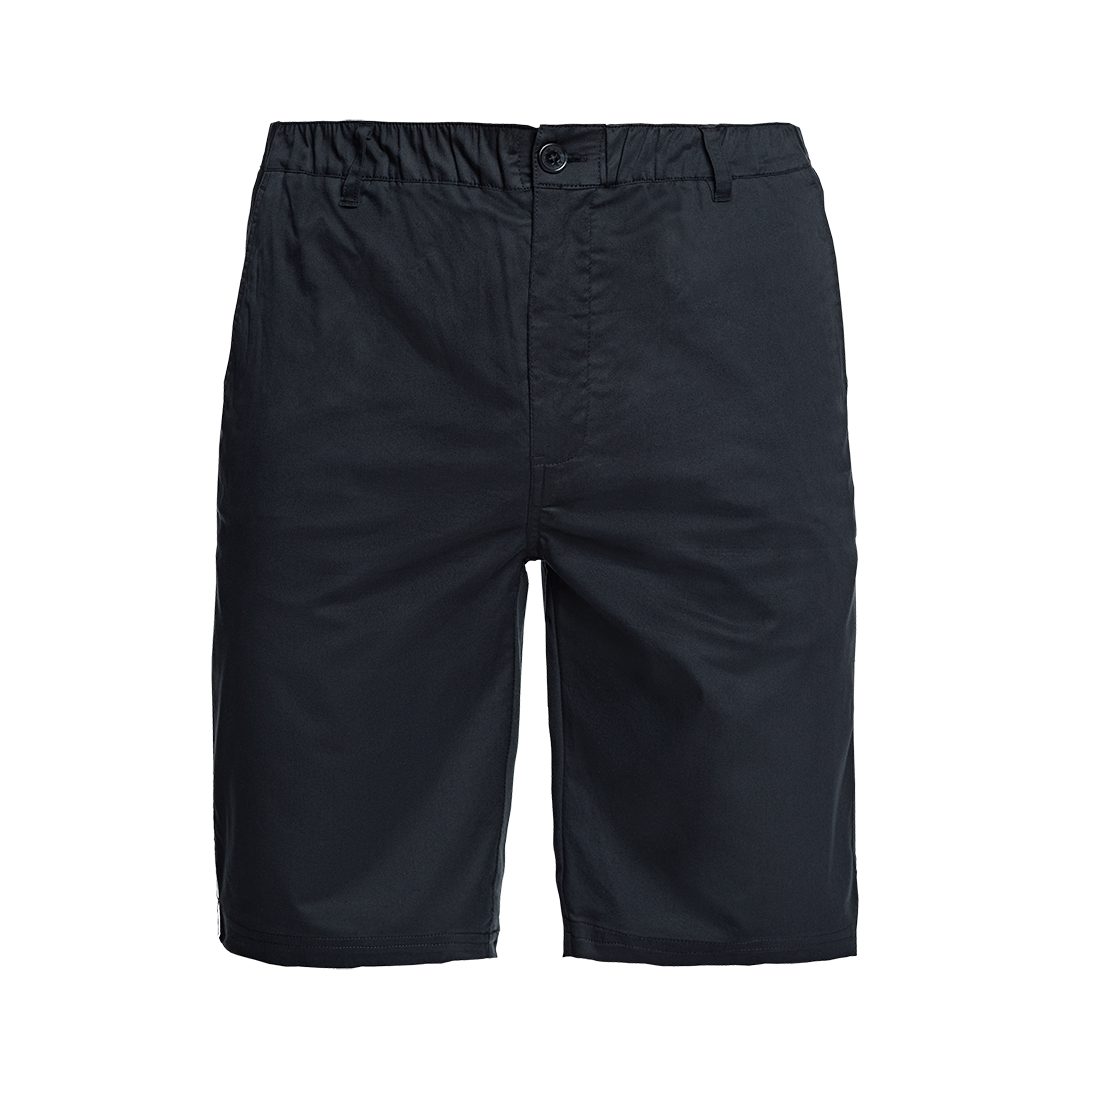 Papas Shorts Chinoshorts Kurze knielange Shorts - Sommer Shorts mit bequemem, elastischem Bund und 6 Taschen, davon 2 versteckten, sicheren Reißverschlusstaschen für Wertgegenstände schwarz